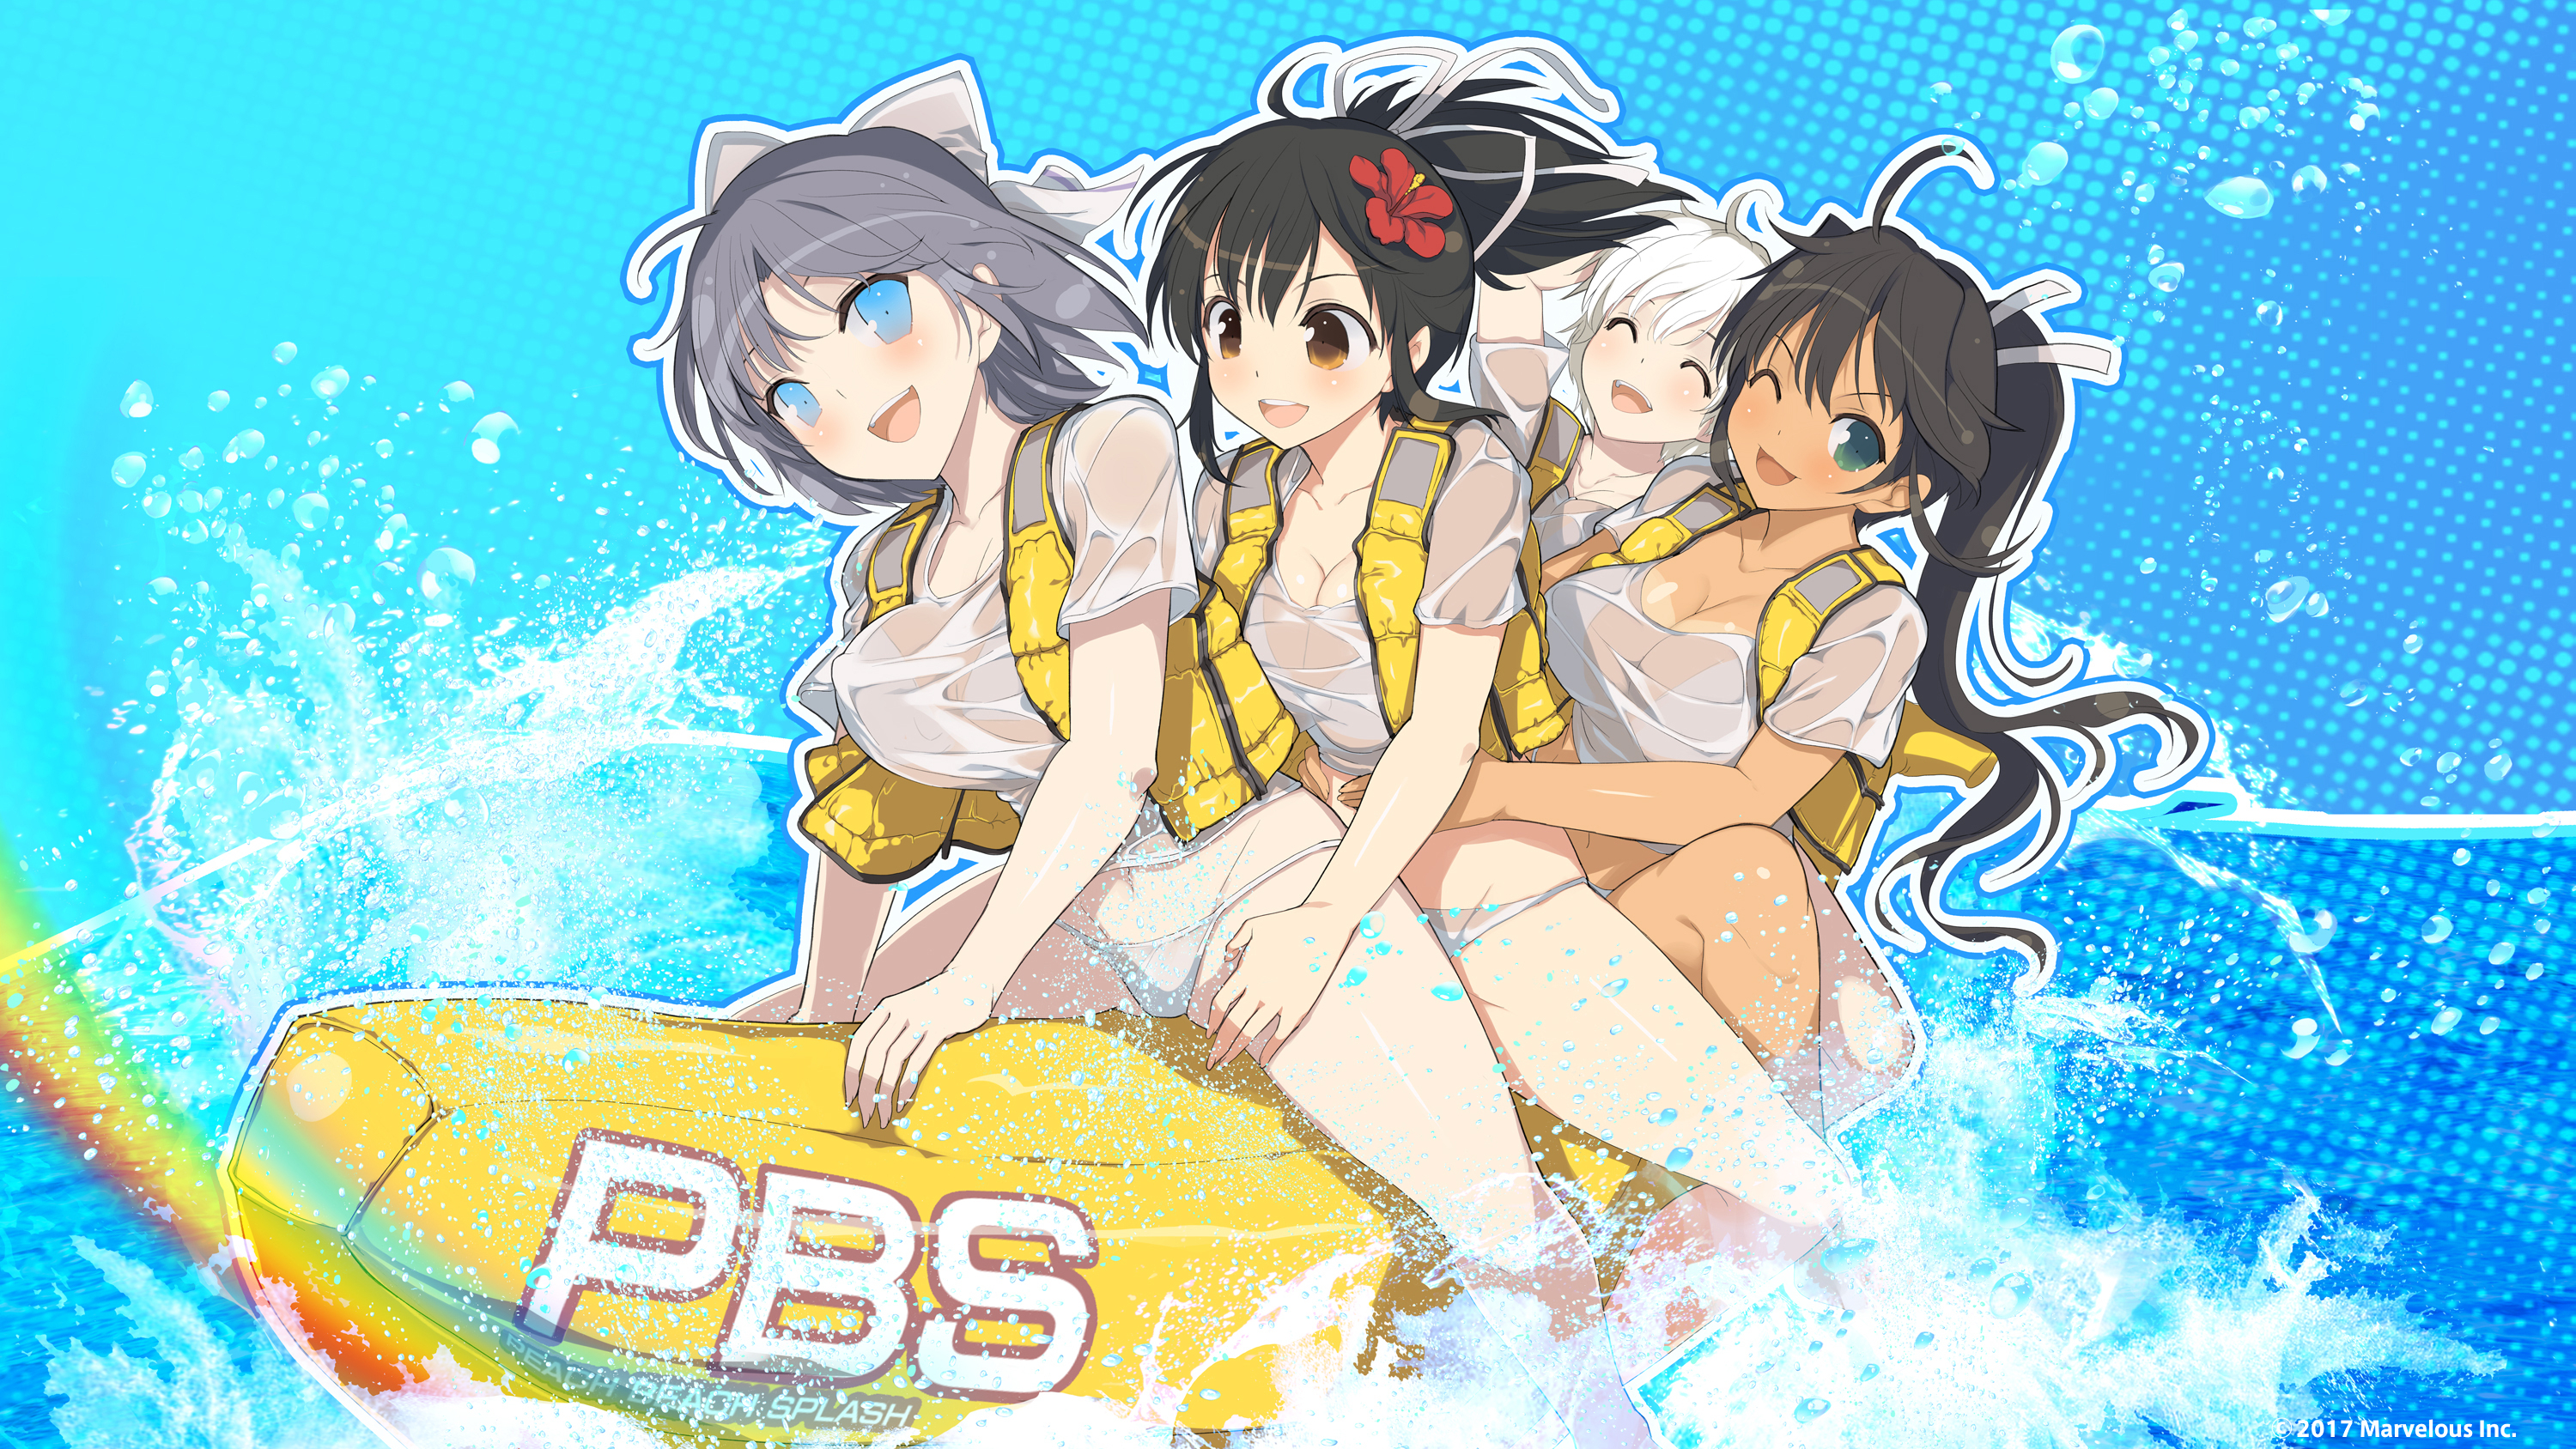 Anime 3000x1688 Senran Kagura wet clothing water big boobs bikini Asuka (Senran Kagura) Homura (Senran Kagura) Miyabi (Senran Kagura) Yumi (Senran Kagura) anime girls artwork Yaegashi Nan group of women